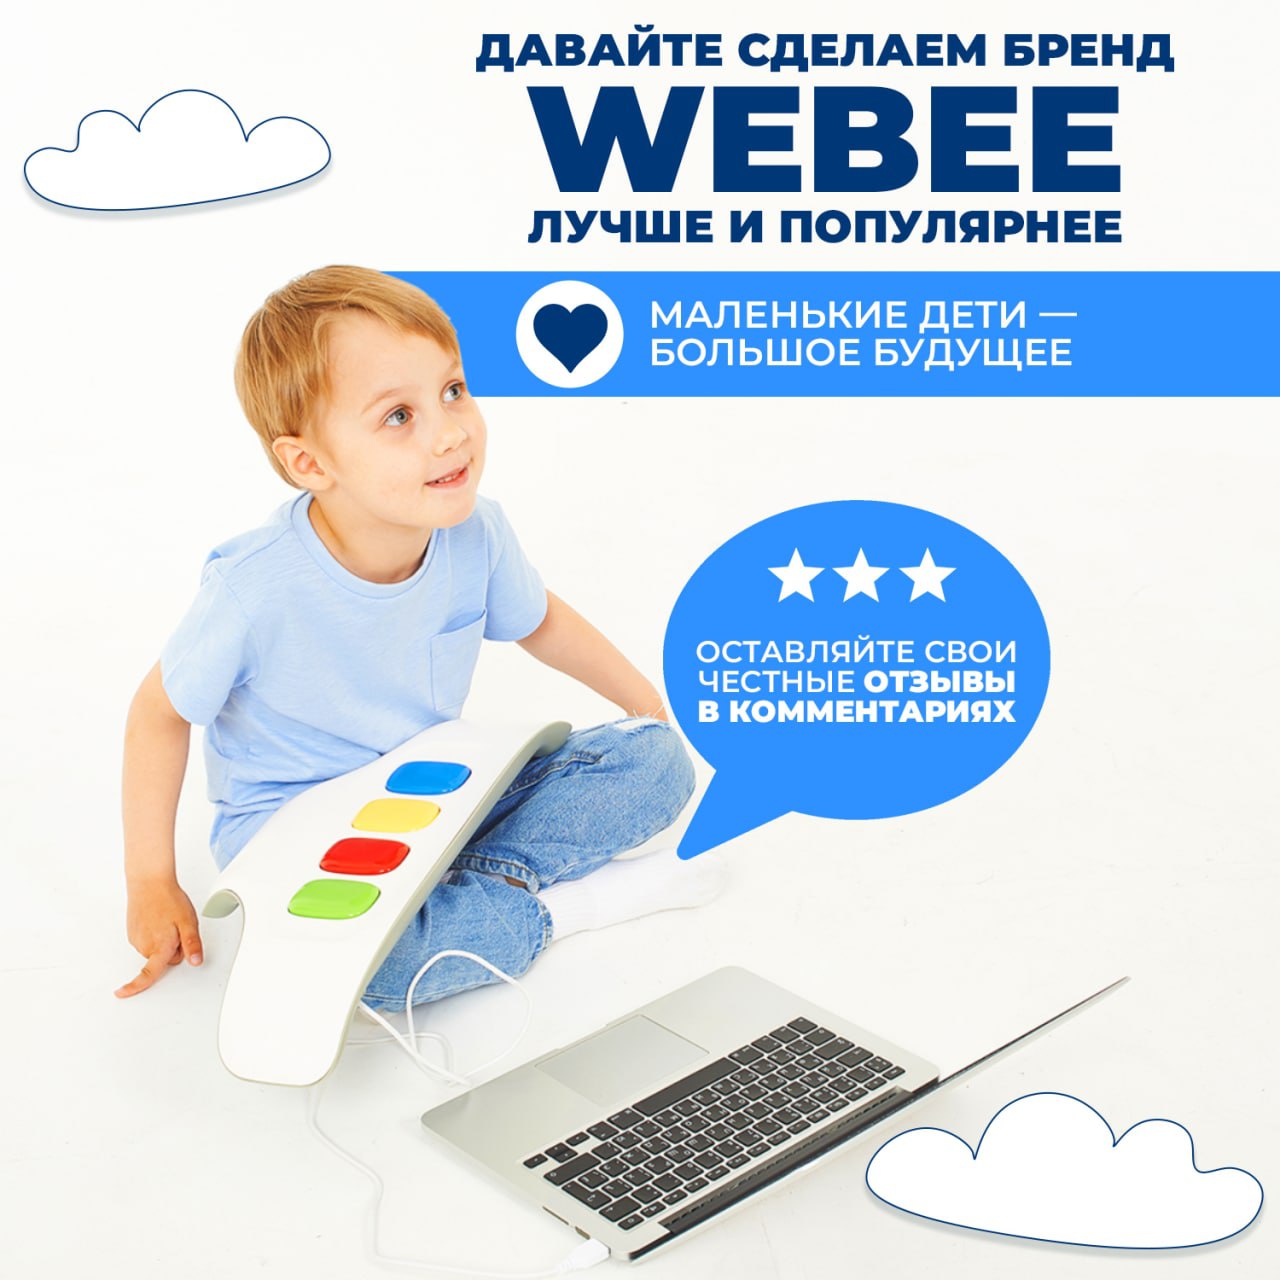 Игрушка Webee детский развивающий компьютер 50 игр - фото 12